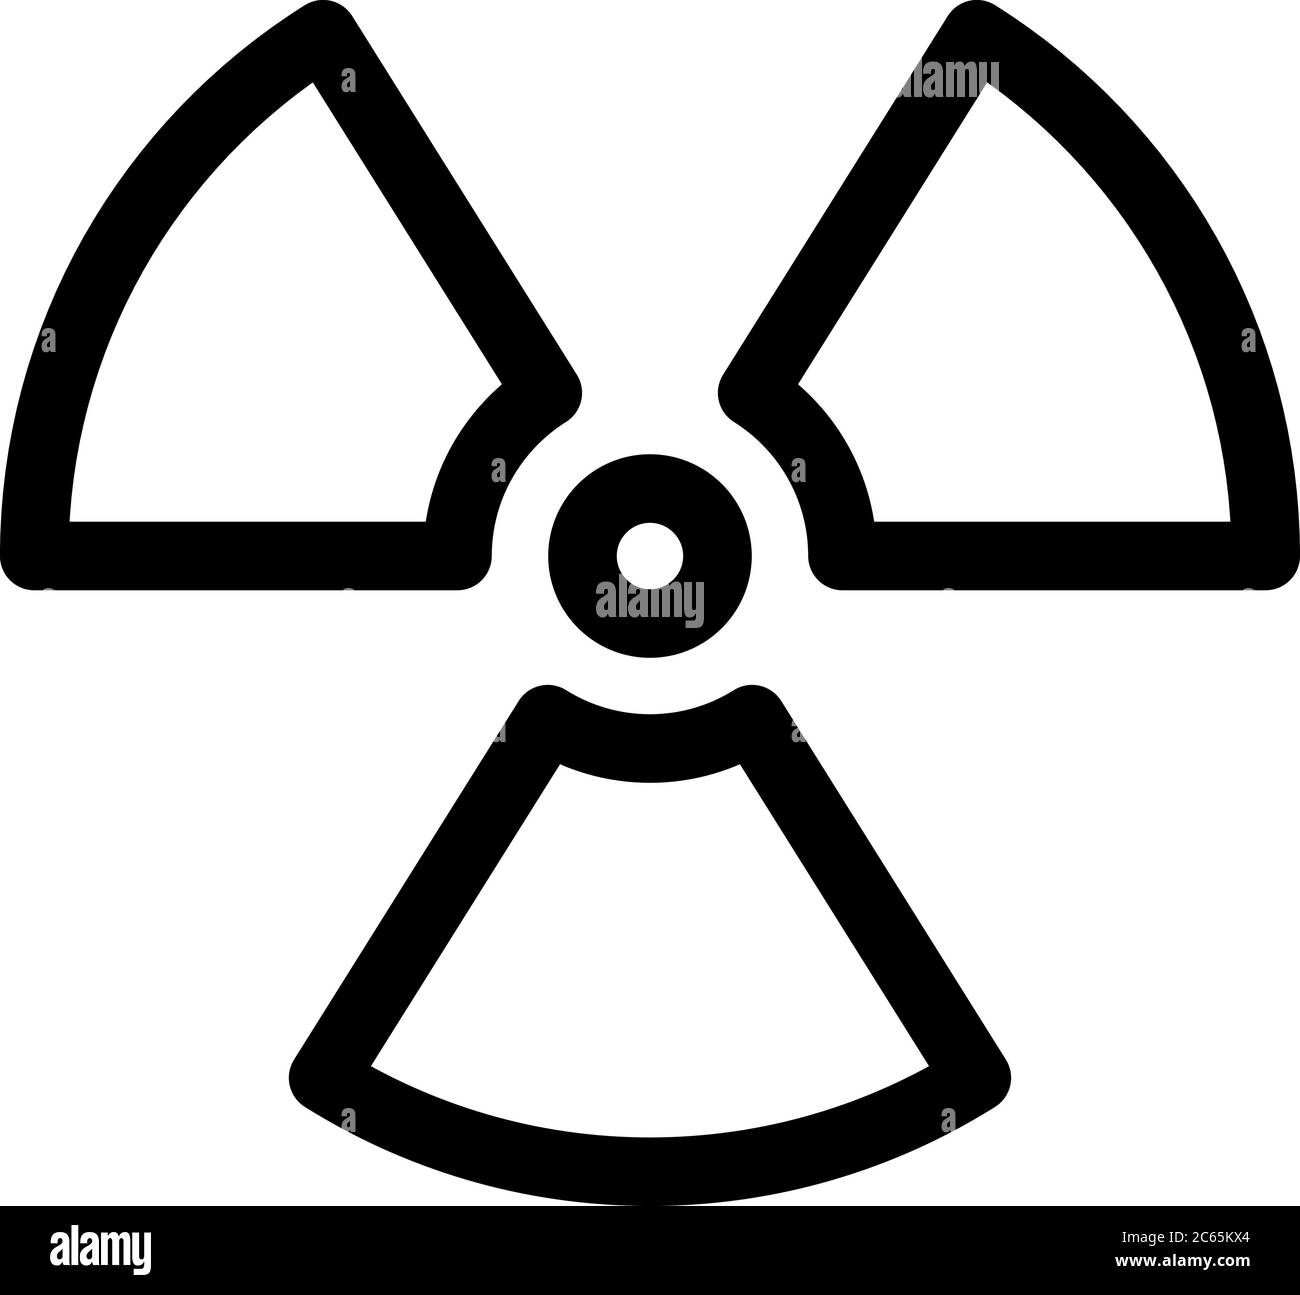 Schild für radioaktives Material. Symbol für Strahlenalarm, Gefahr oder Risiko. Einfache flache Vektorgrafik in Schwarz und Weiß. Stock Vektor